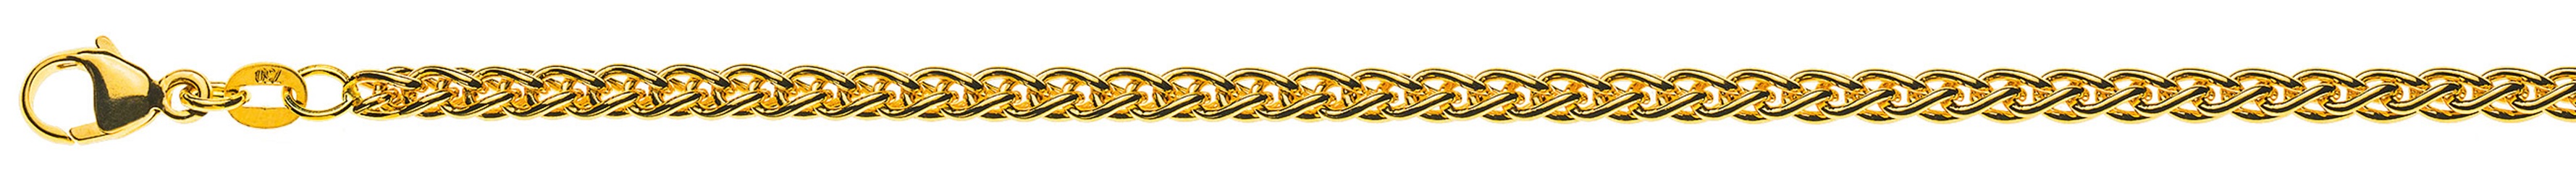 AURONOS Prestige Halskette Gelbgold 18K Zopfkette 60cm 3.3mm